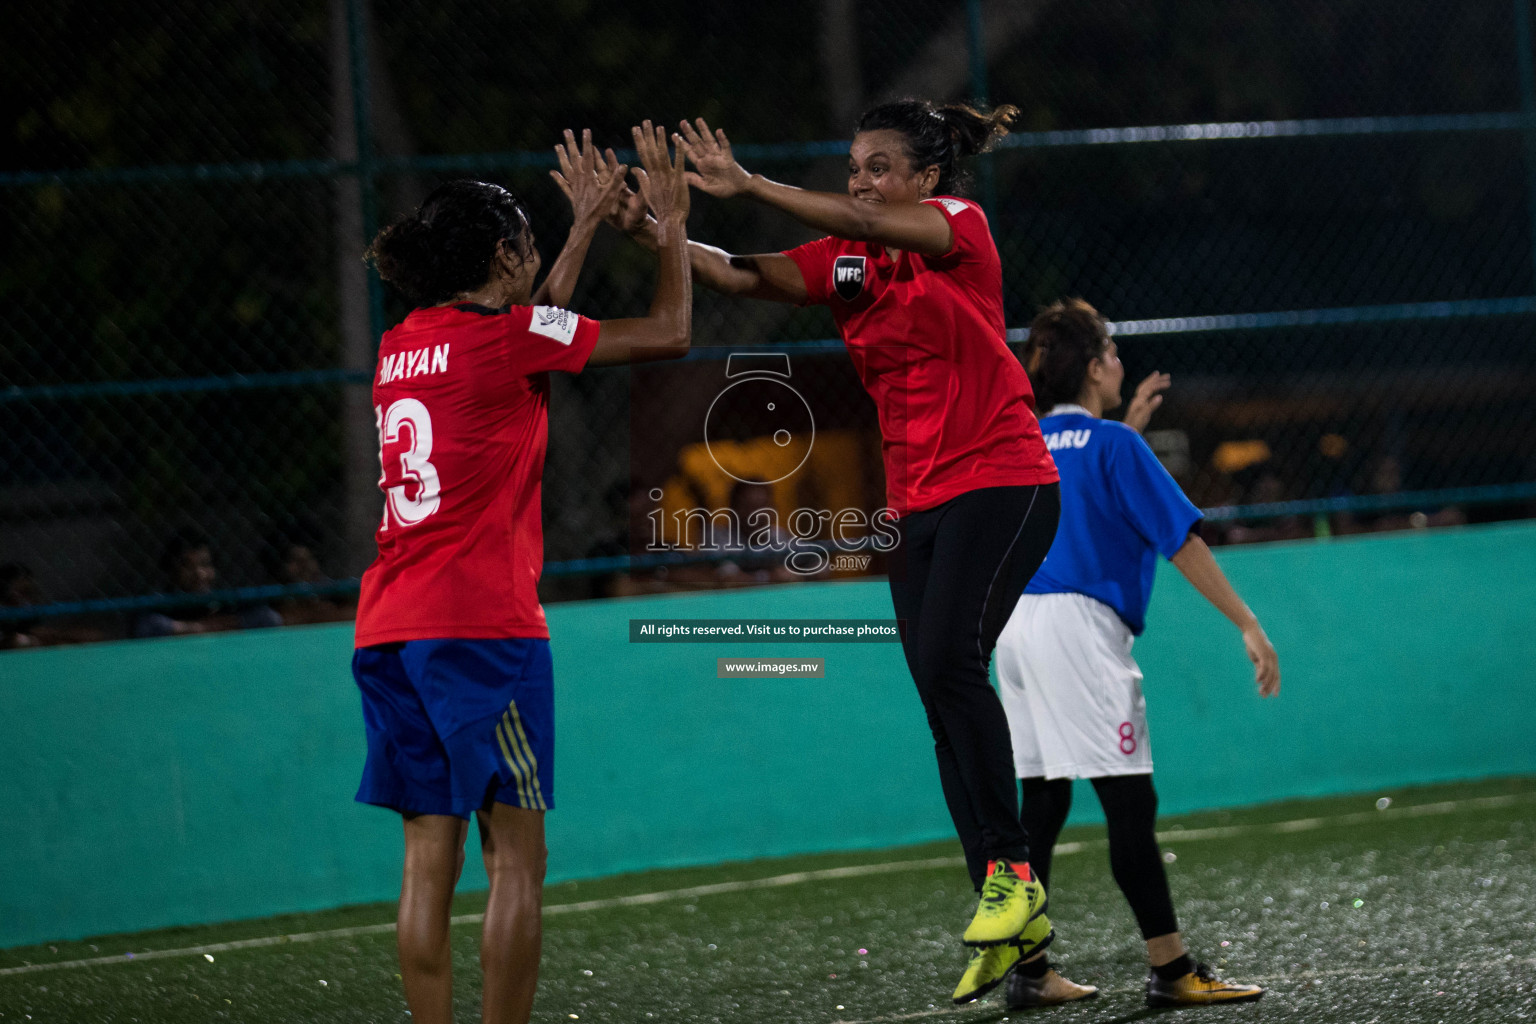 WFC vs Felivaru Friendly Futsal Match 2019 in Felivaru, Maldives on 15th March 2019, Photos: Suadh Abdul Sattar / images.mv